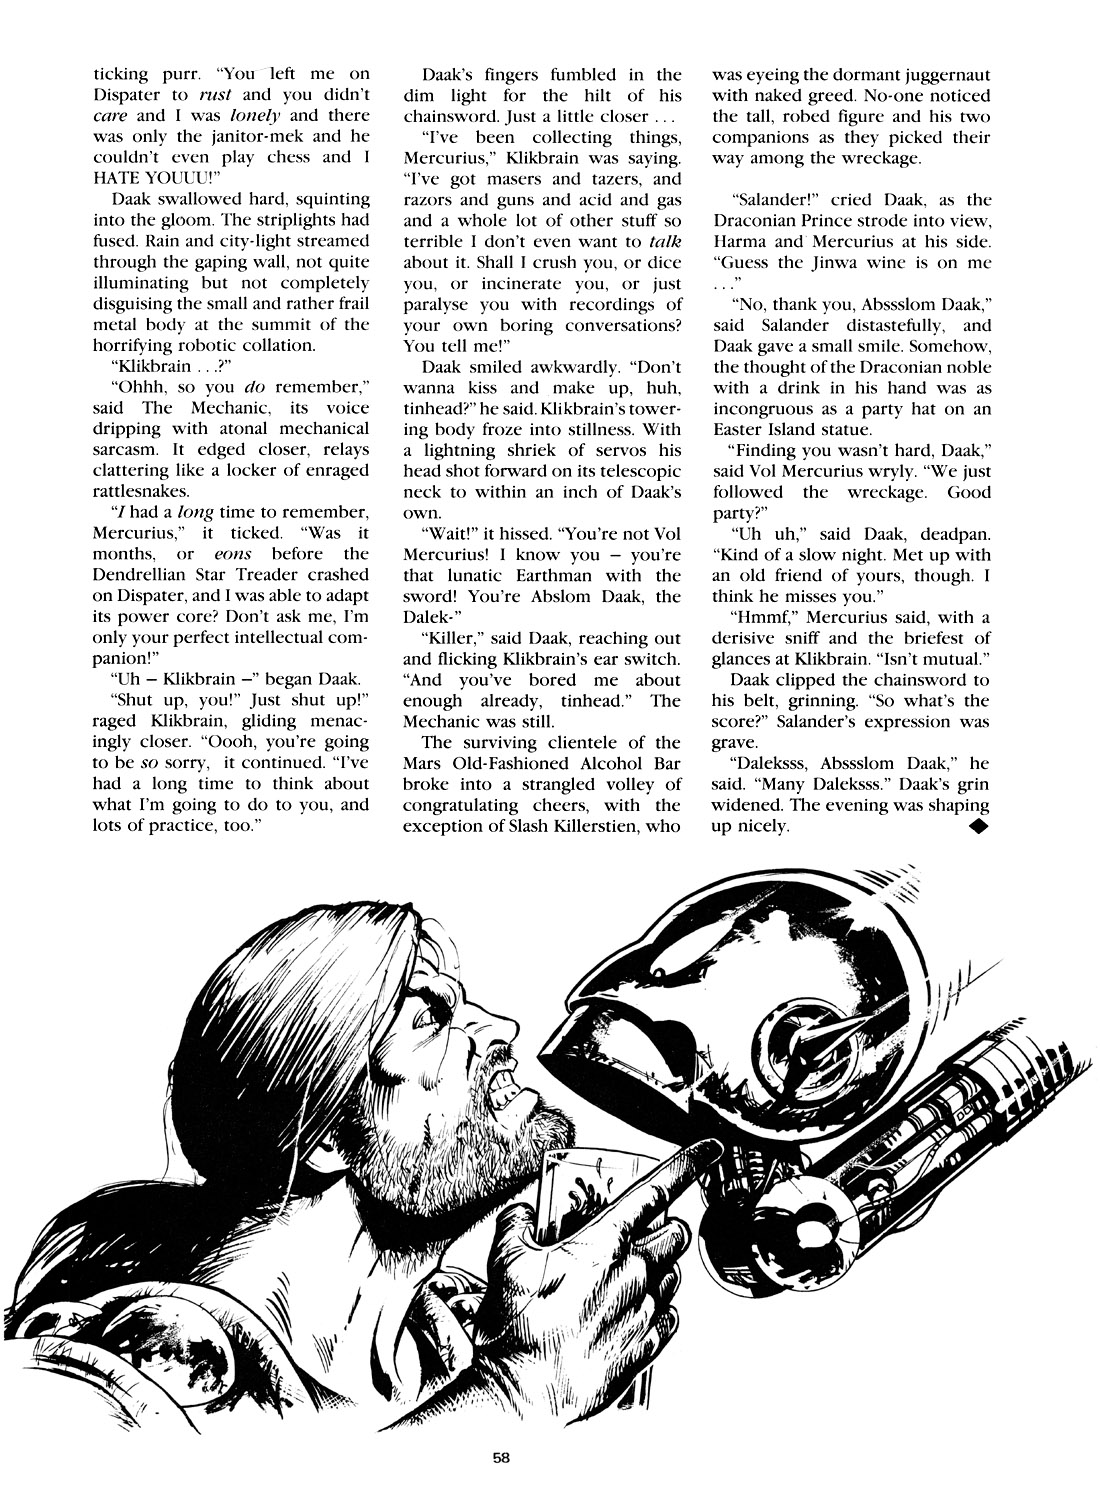 Read online Marvel Graphic Novel comic -  Issue #4 Abslom Daak, Dalek Killer - 57